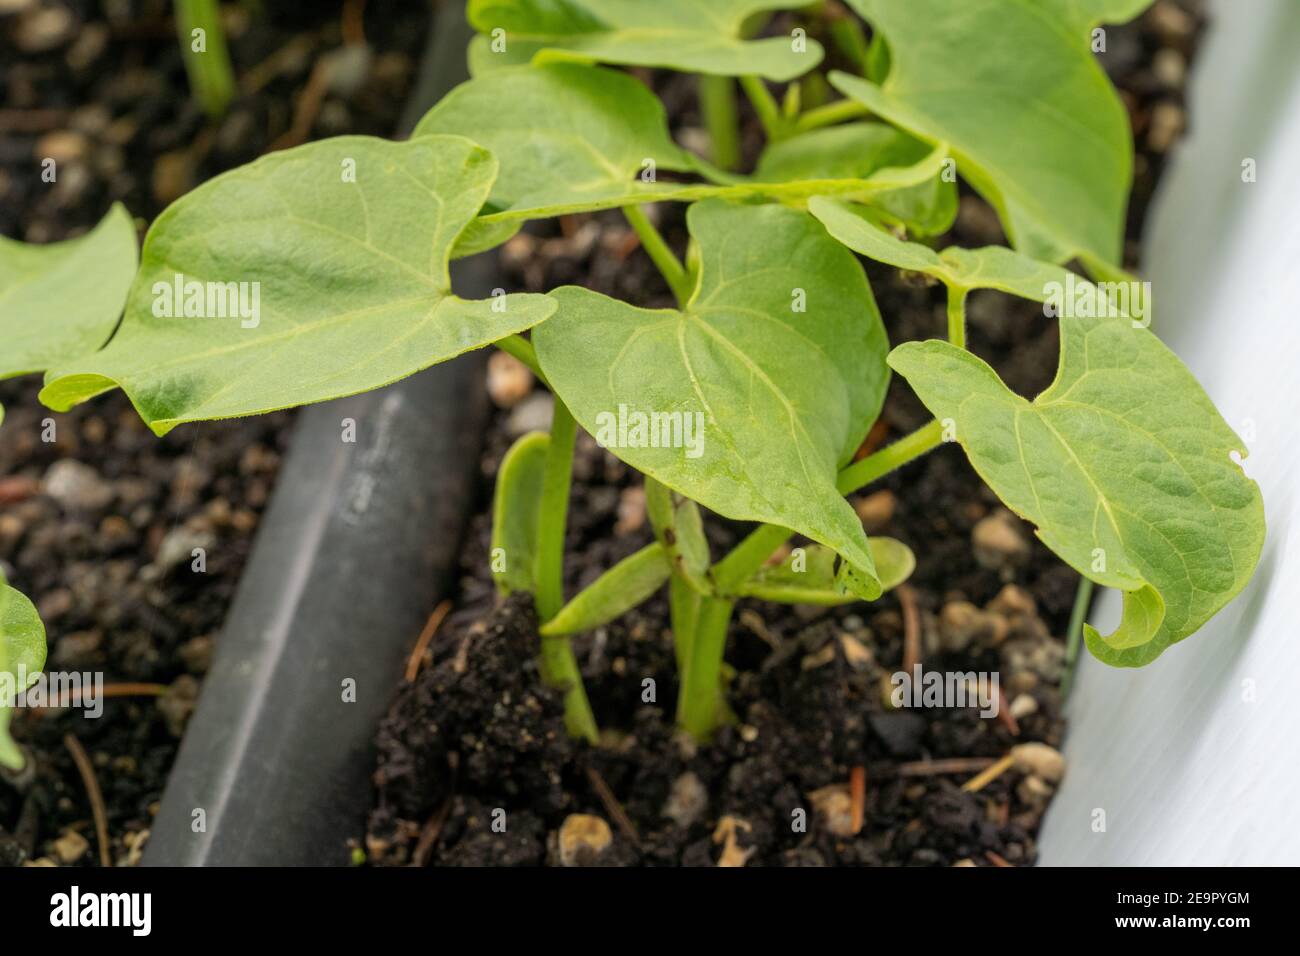 Issaquah, Washington, USA. Monte Cristo Pole Bean Sämlinge zeigen Cotyledons, die ersten Blätter von Pflanzen produziert. Cotyledons werden nicht als tr Stockfoto